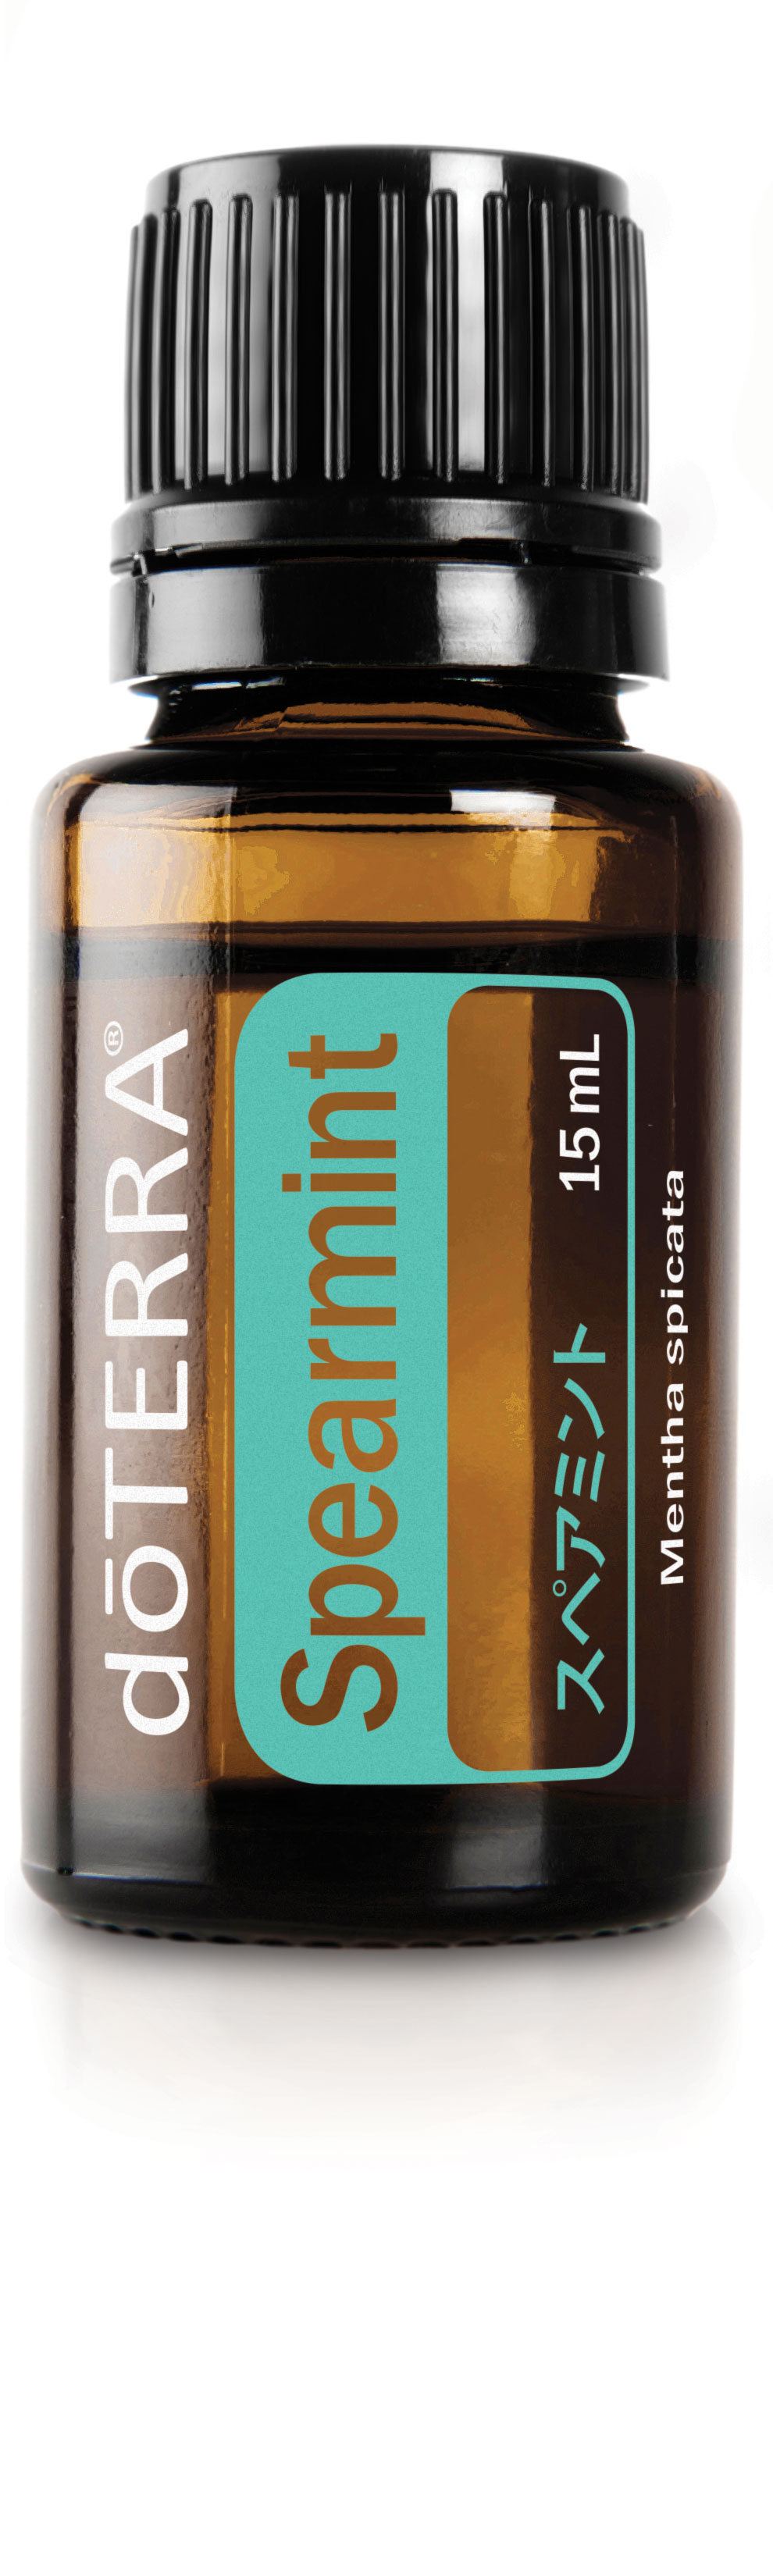 スペアミント | doTERRA エッセンシャルオイル | doTERRA Essential Oils